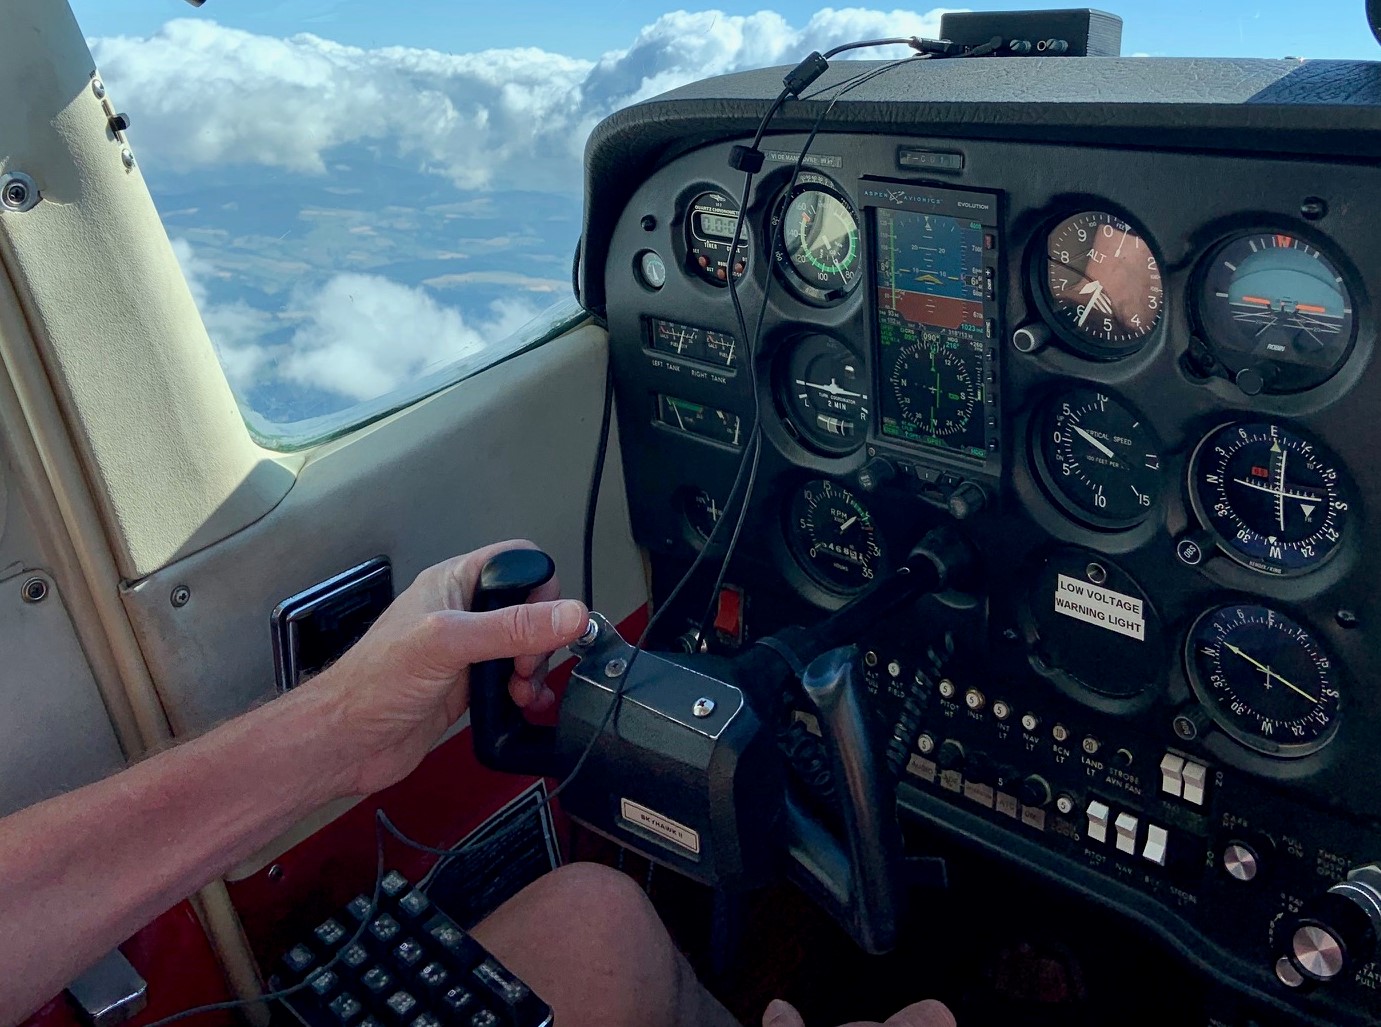 Unité secondaire  du soundflyer installée, en vol : sur un fond de nuage, deux mains manient les commandes, devant le tableau de bord